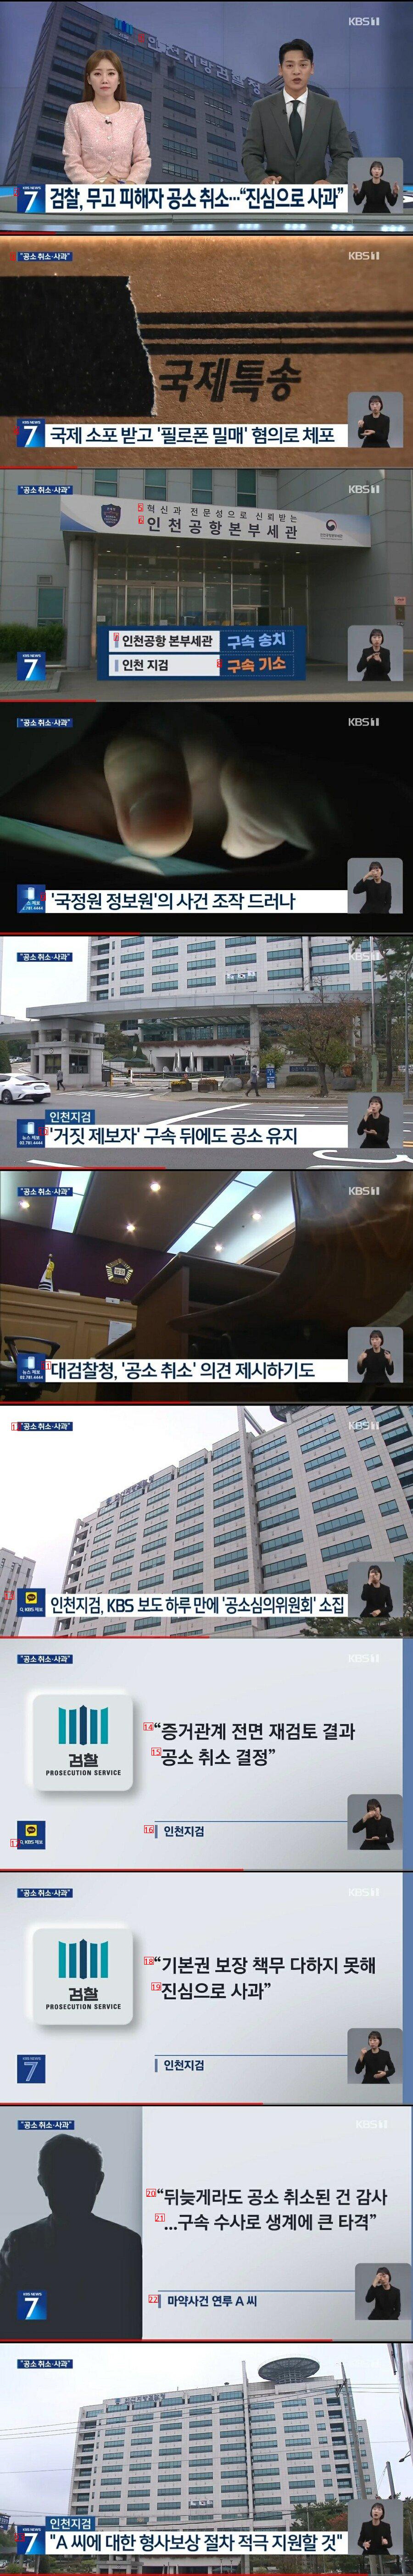 언론보도 하루 만에 공소 취소한 인천지검